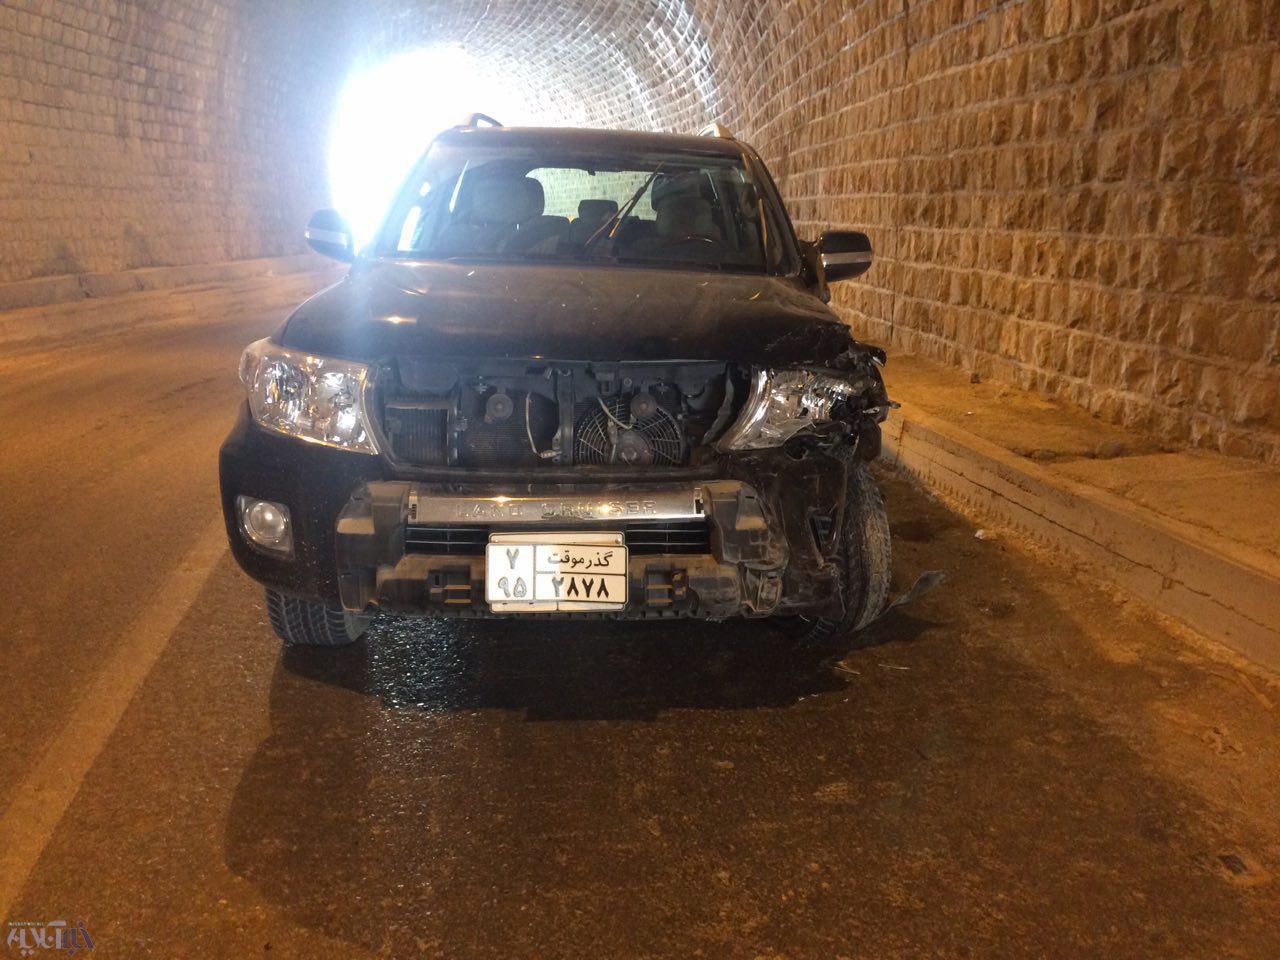 حادثه رانندگی در تونل پاوه – نودشه منجربه کشته و زخمی شدن 3 نفر گشت